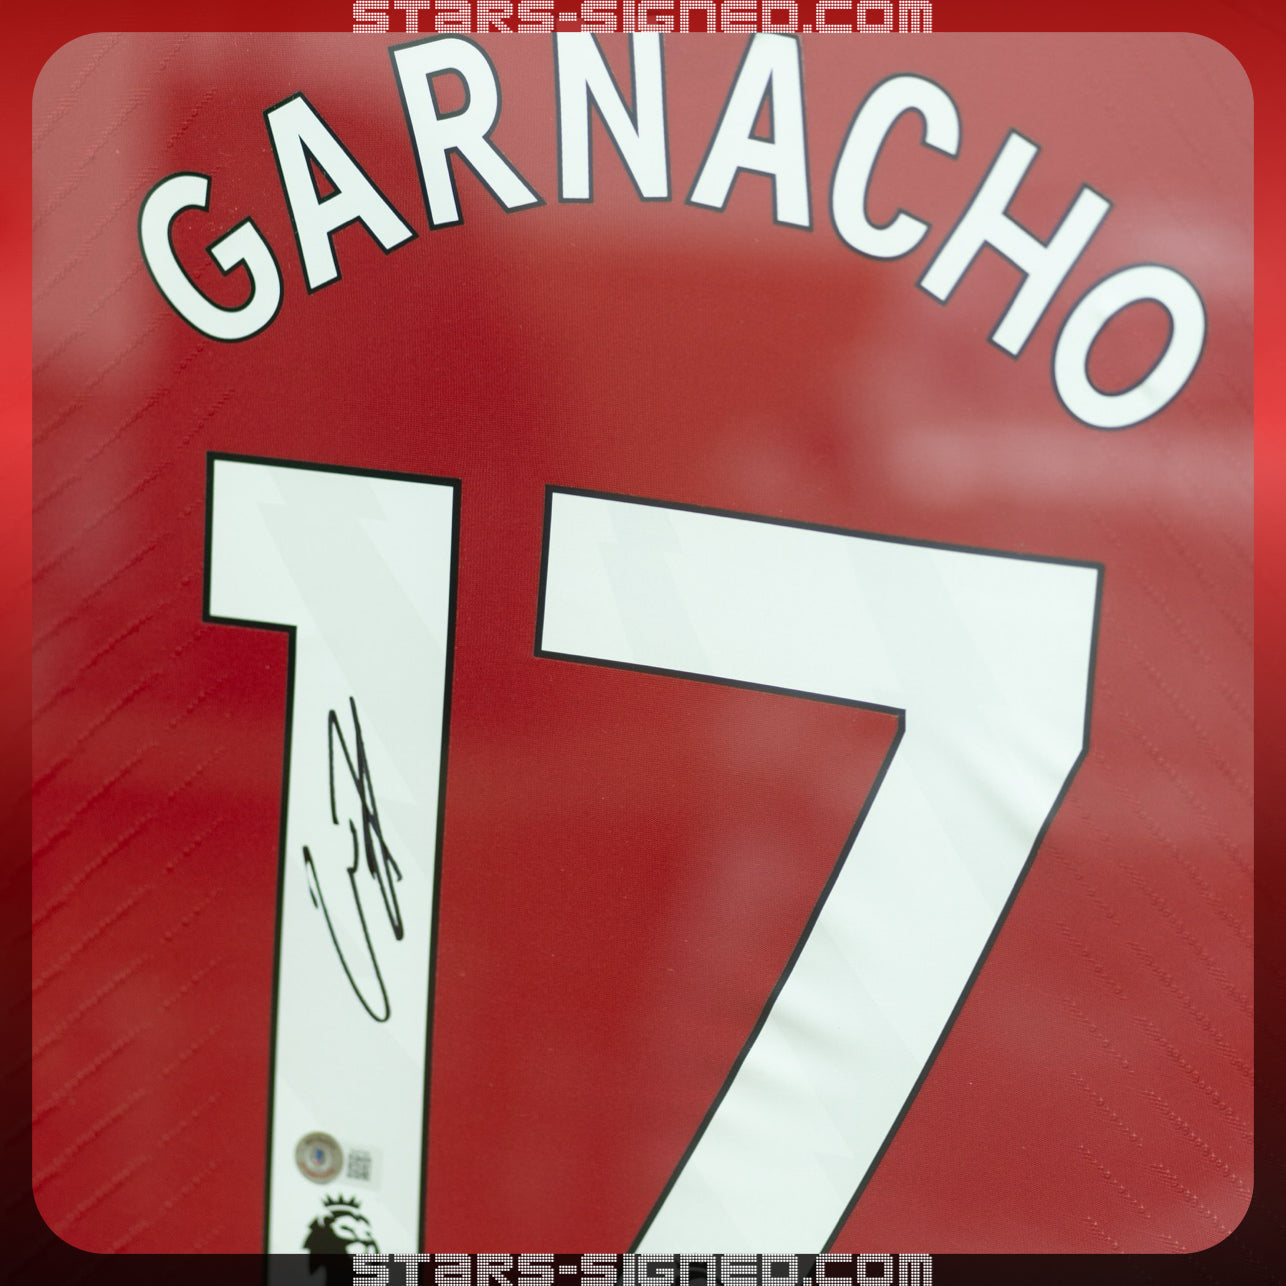 加拿祖 Alejandro Garnacho 曼聯主場球衣裱框配金線條外框(背簽)